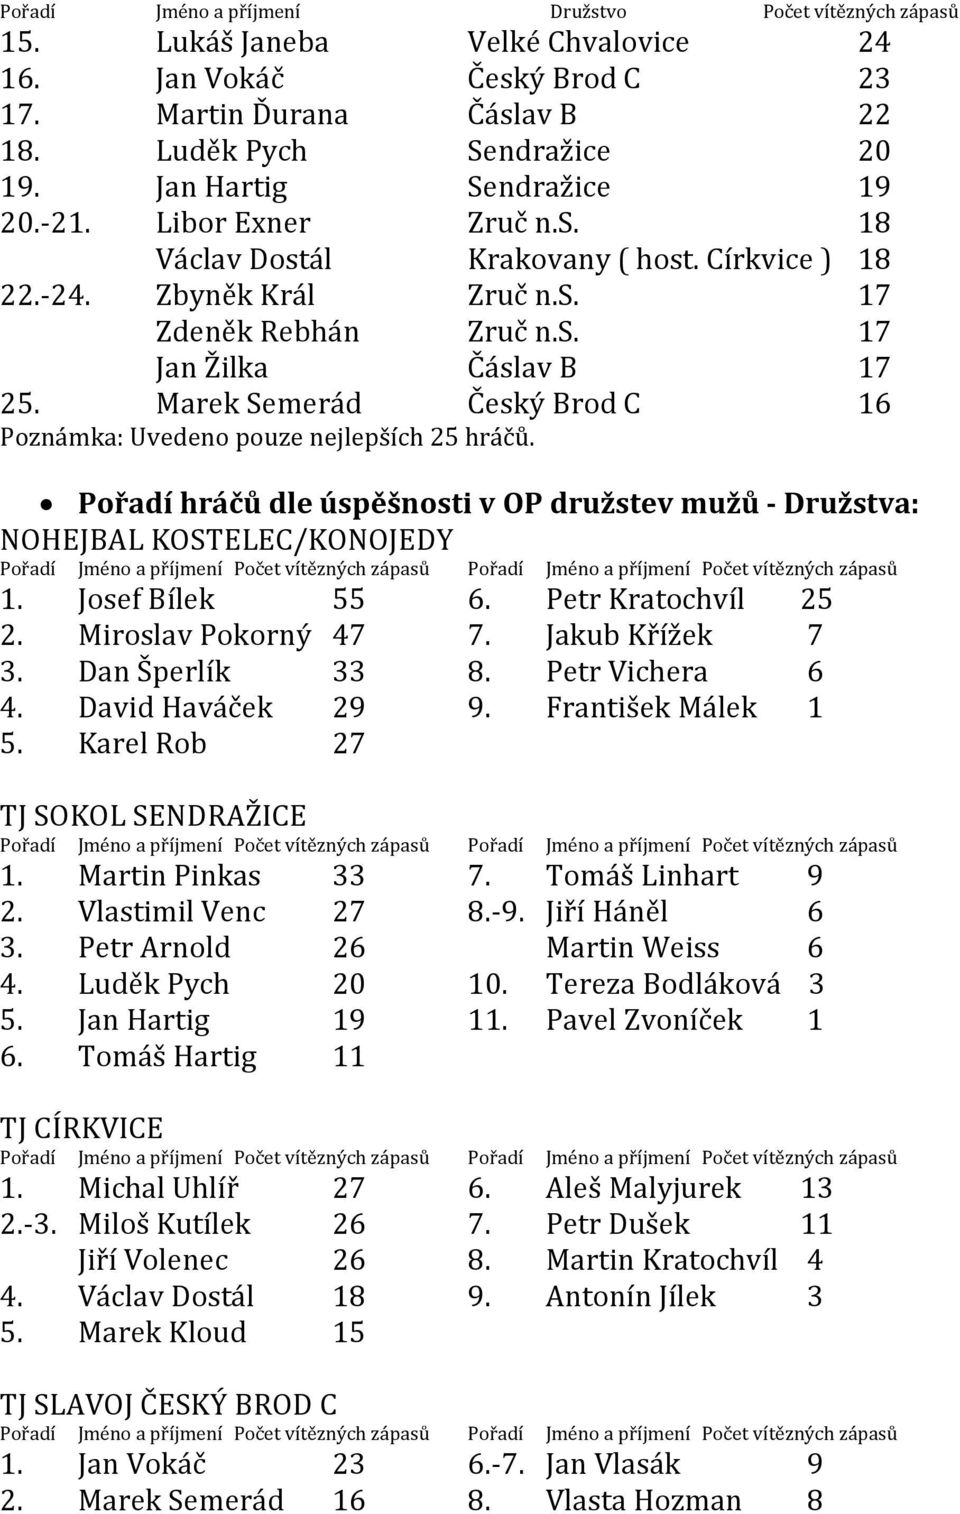 Marek Semerád Český Brod C 16 Poznámka: Uvedeno pouze nejlepších 25 hráčů.